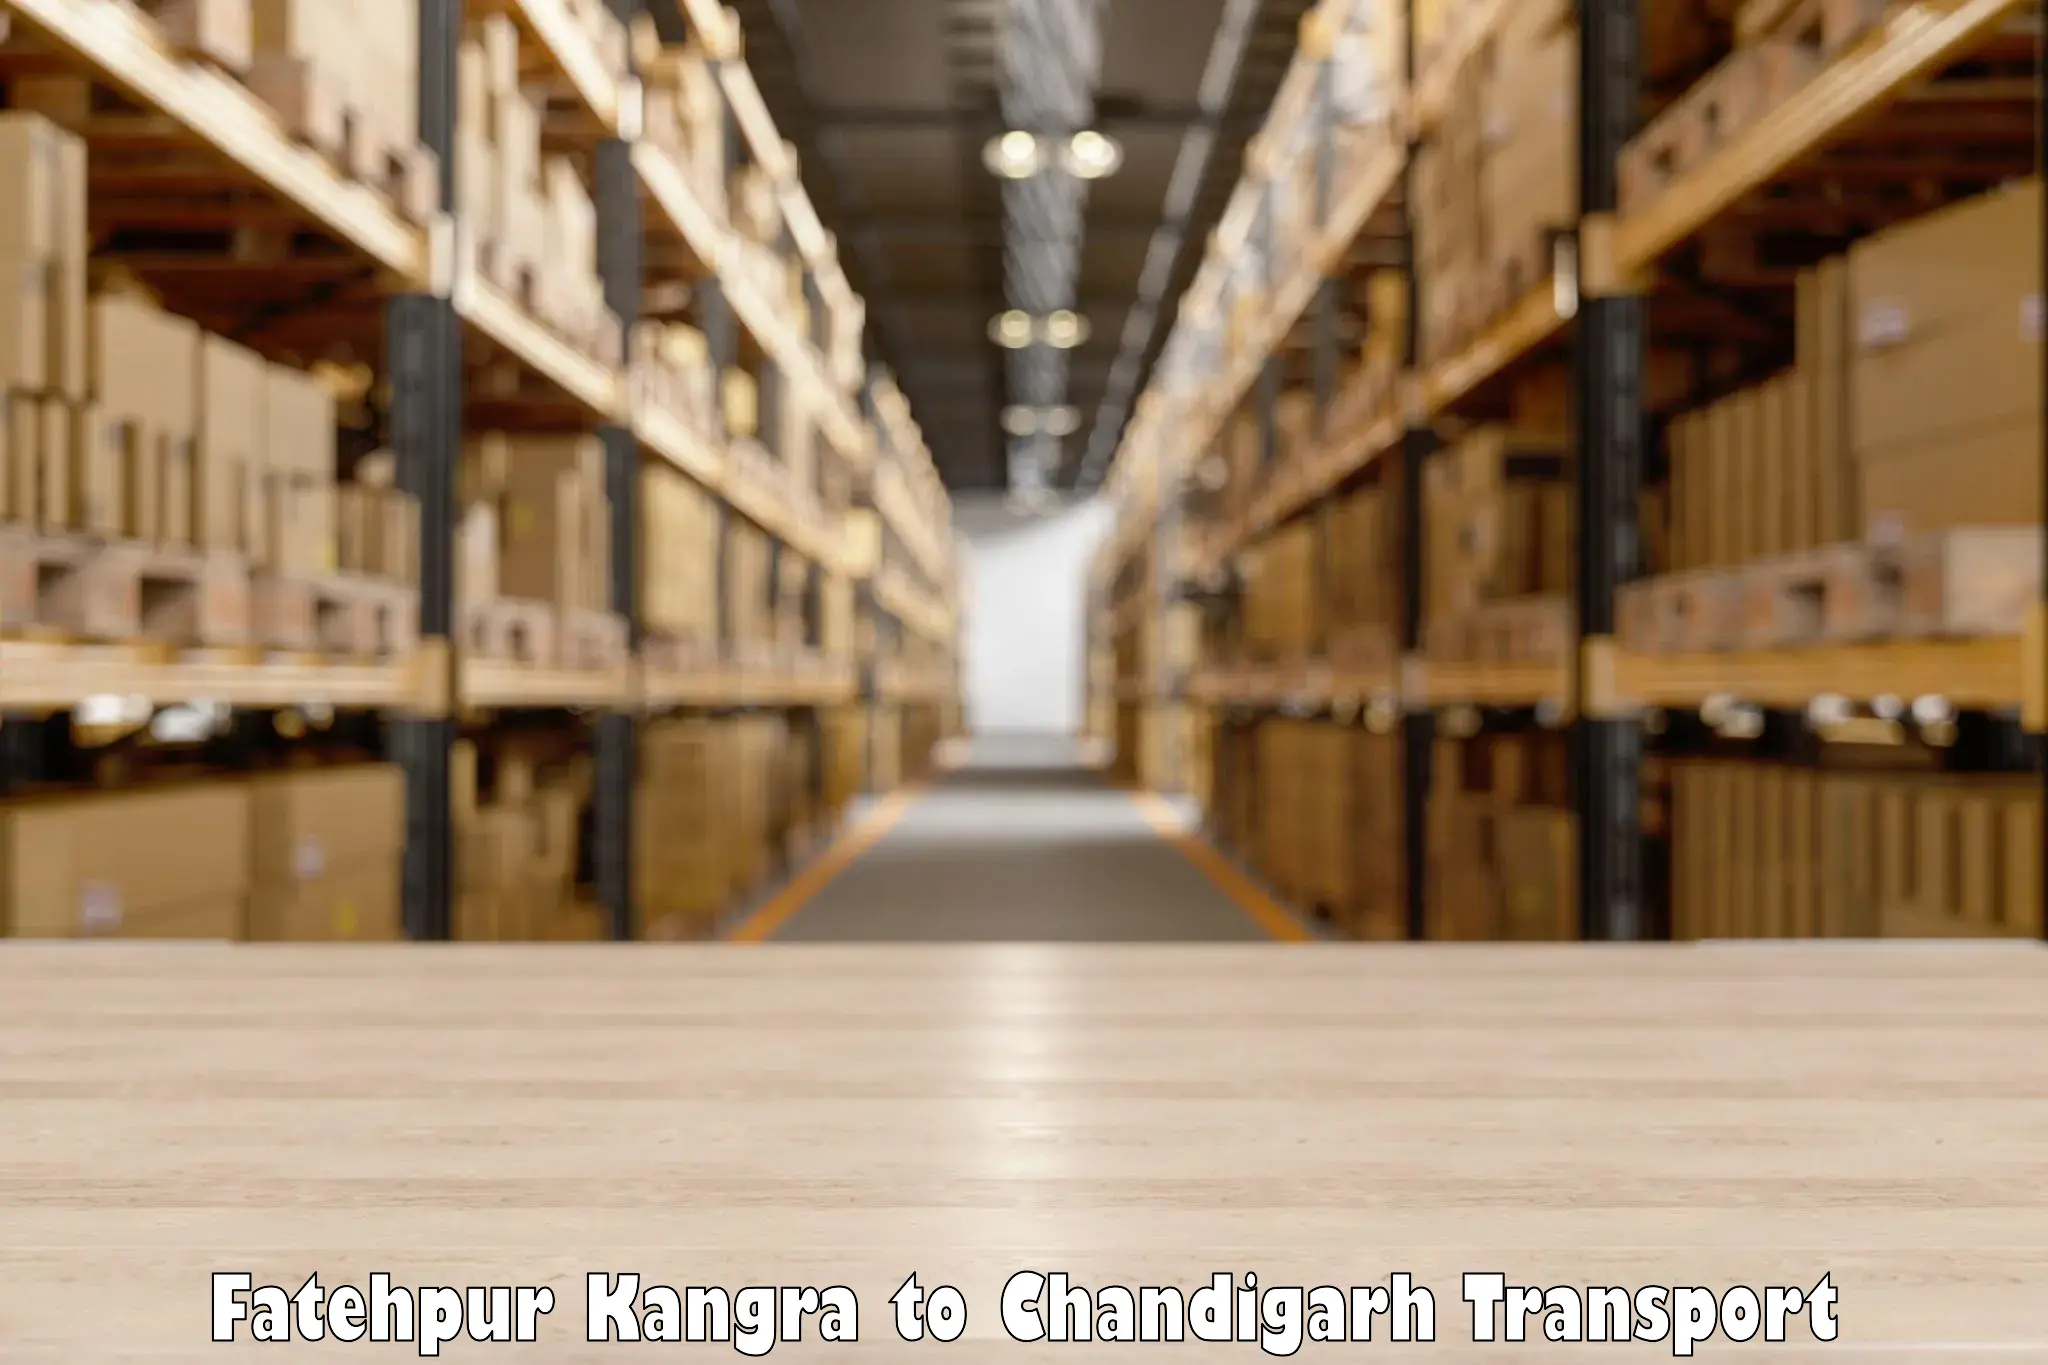 Truck transport companies in India Fatehpur Kangra to Chandigarh